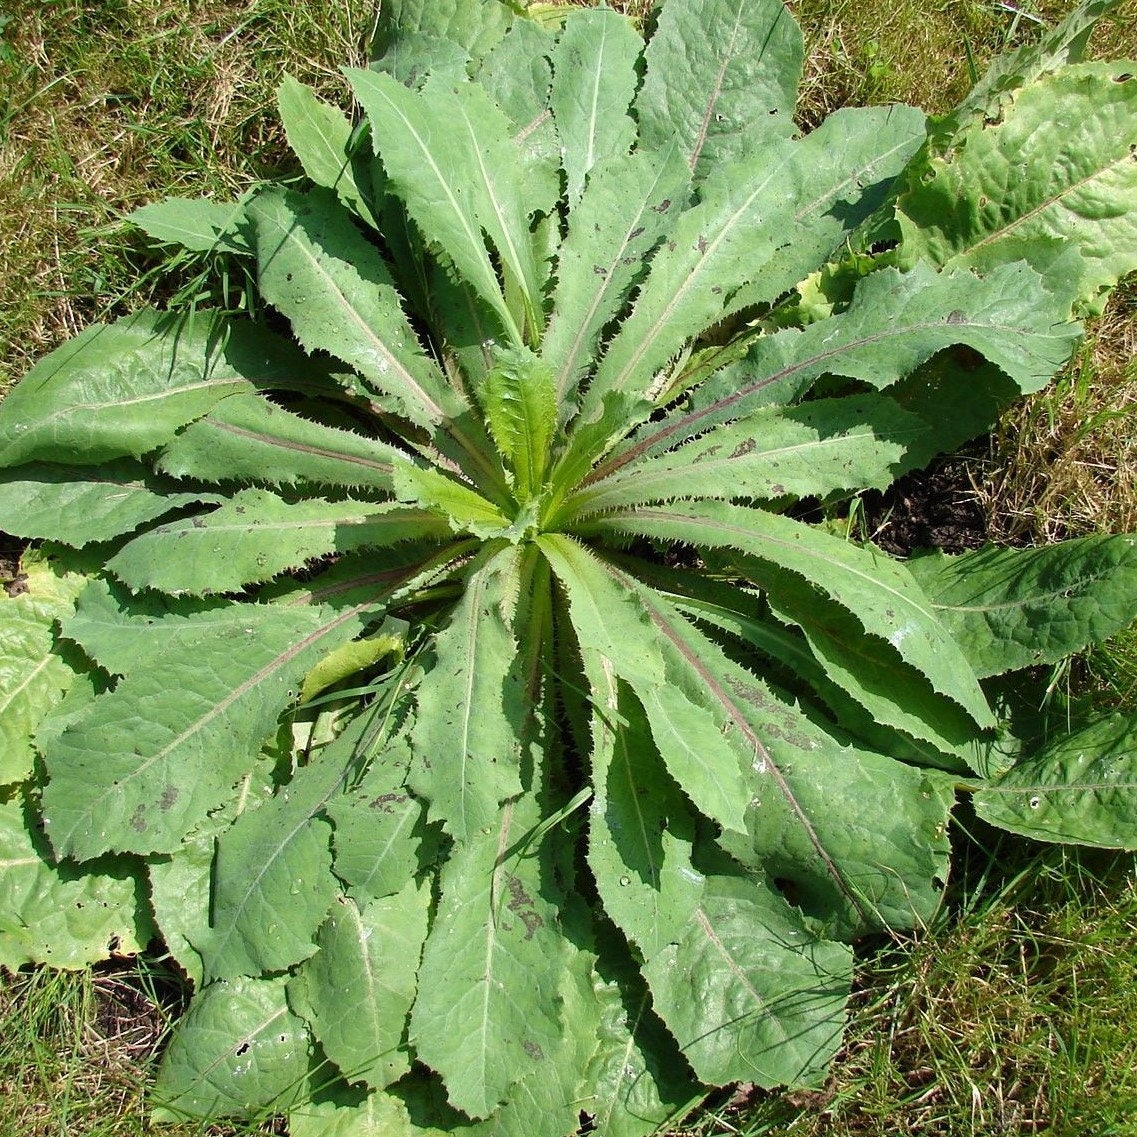 Латук дикий (Lactuca virosa). Wild lettuce латук дикий. Lactuca virosa (латук ядовитый). Молочай осот огородный. Огородные растения названия